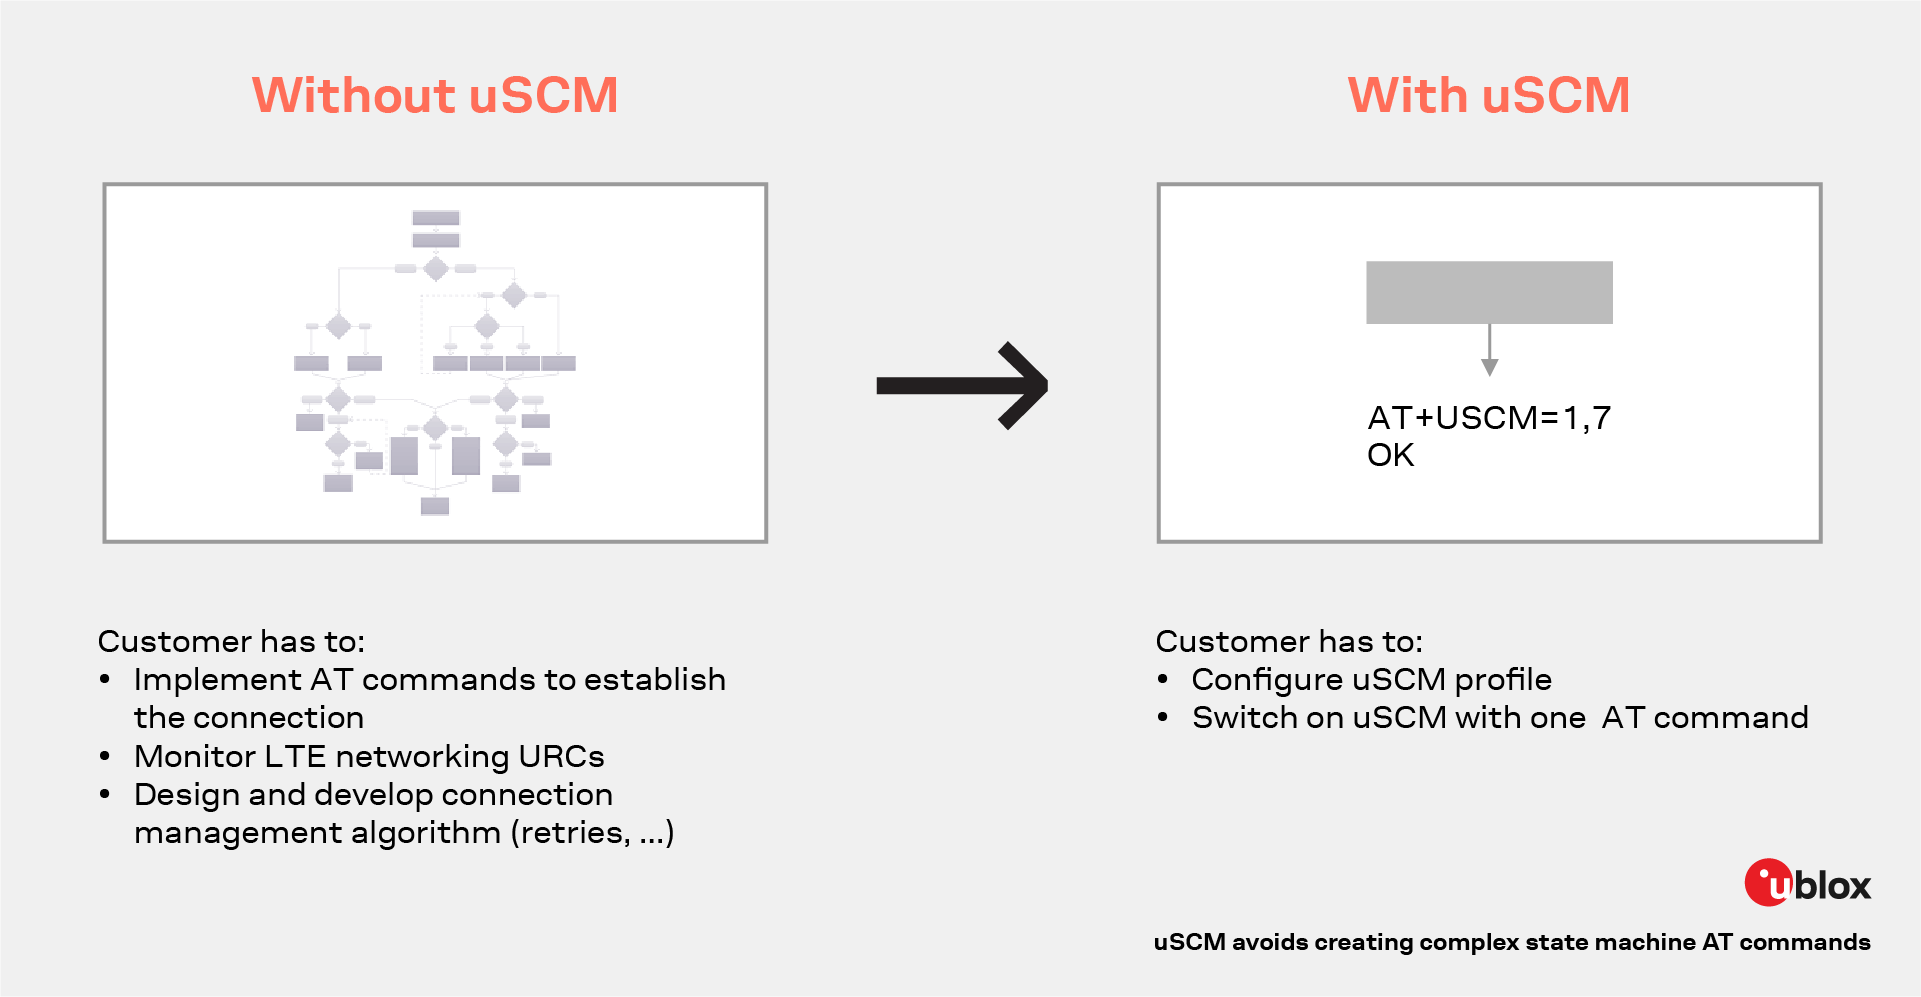 uscm facilitates simpler AT commands